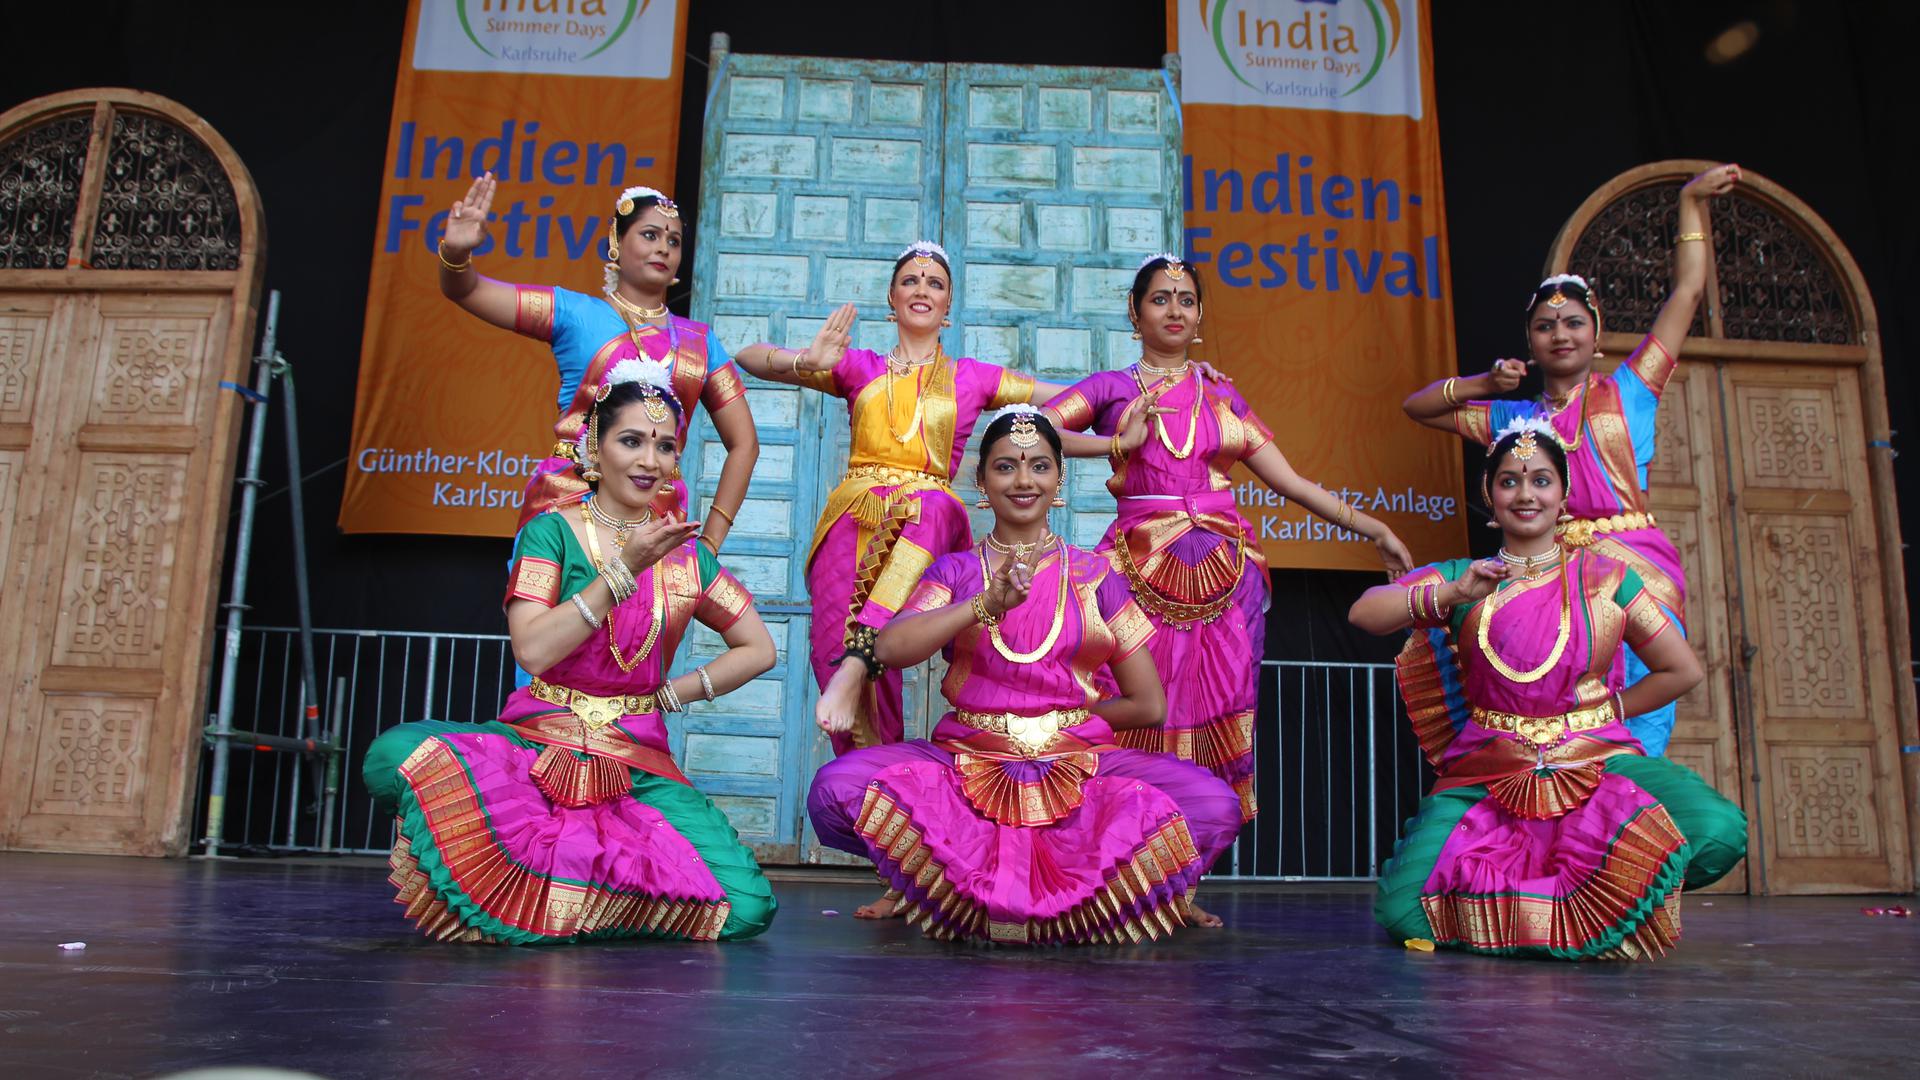 Auf den India Summer Days in der Günther-Klotz-Anlage präsentieren zahlreiche Gruppen die Vielfalt indischer Kultur.